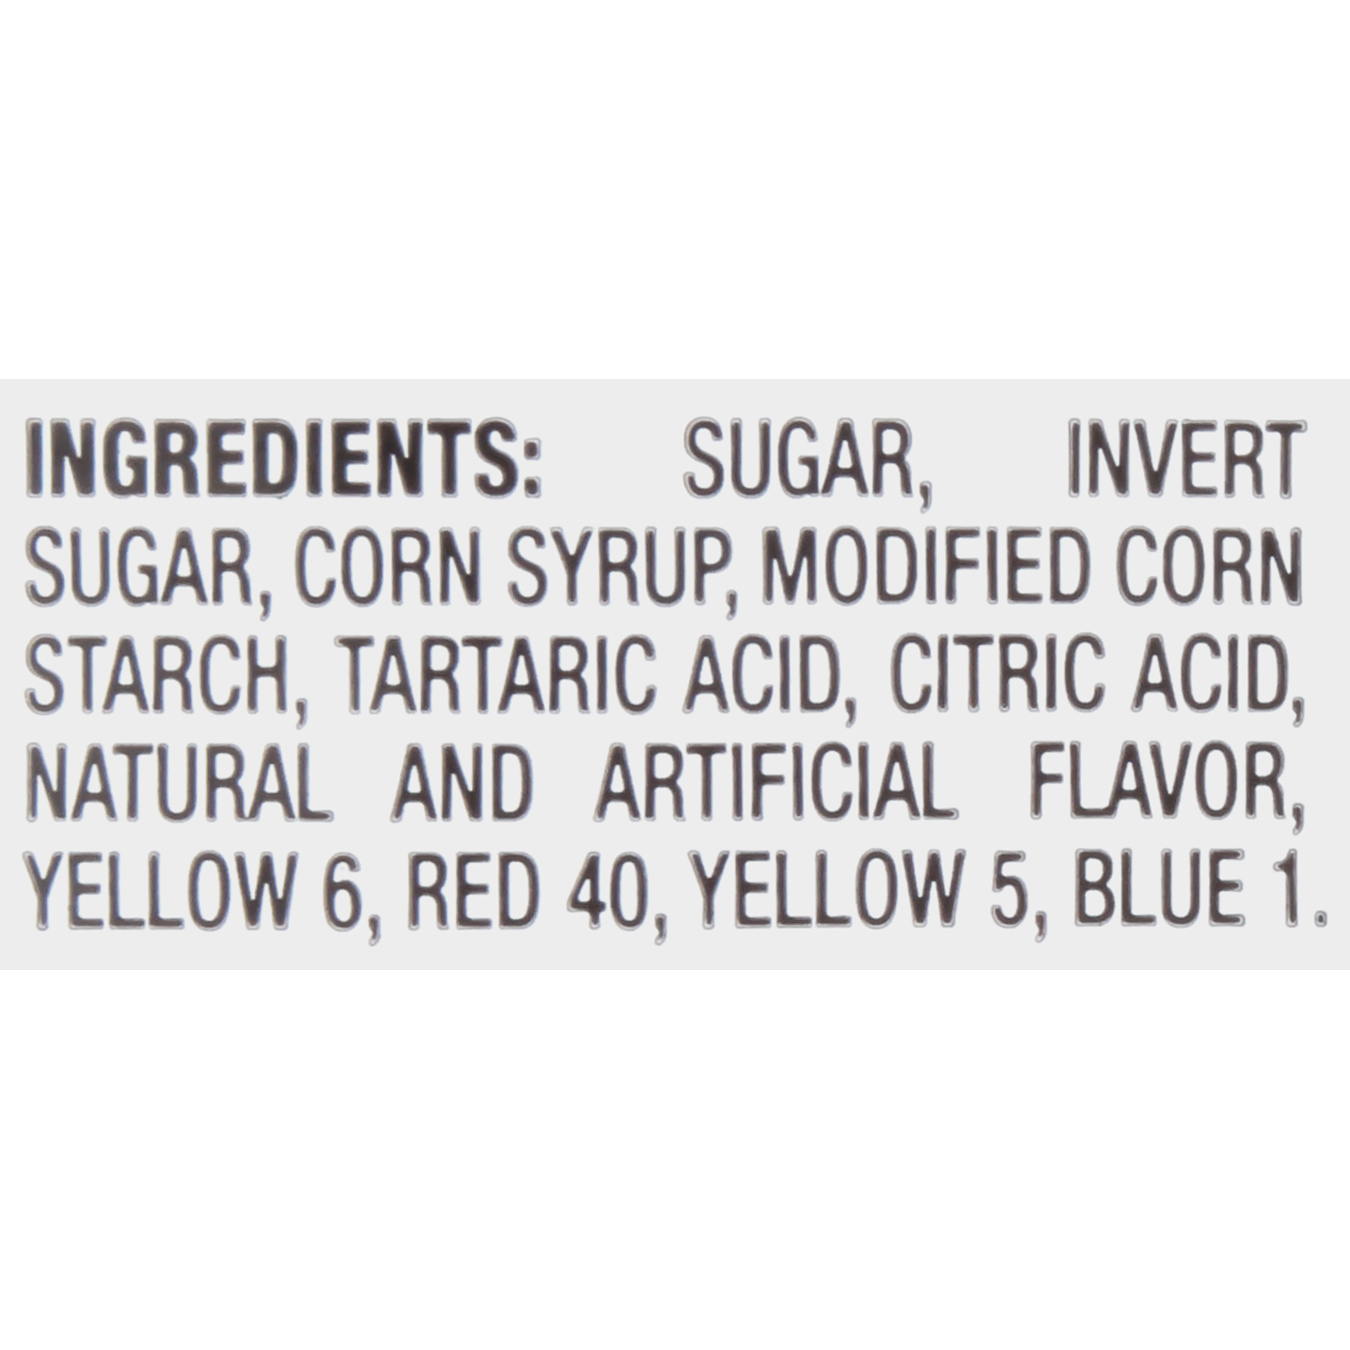 ingrediants Image